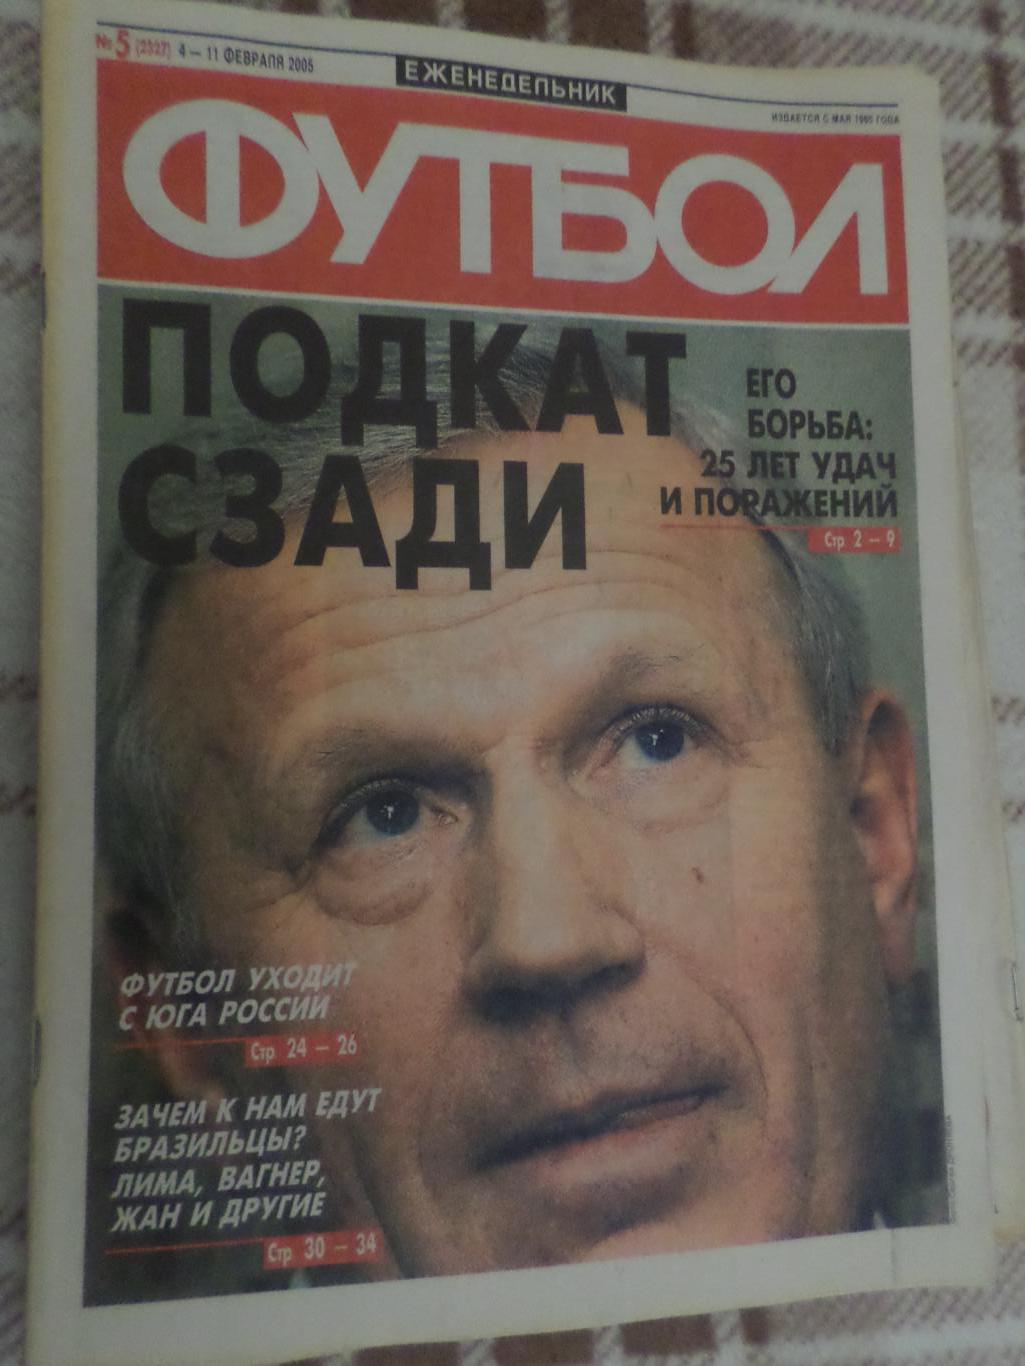 Еженедельник Футбол ( Москва) номер 5, 2005 г